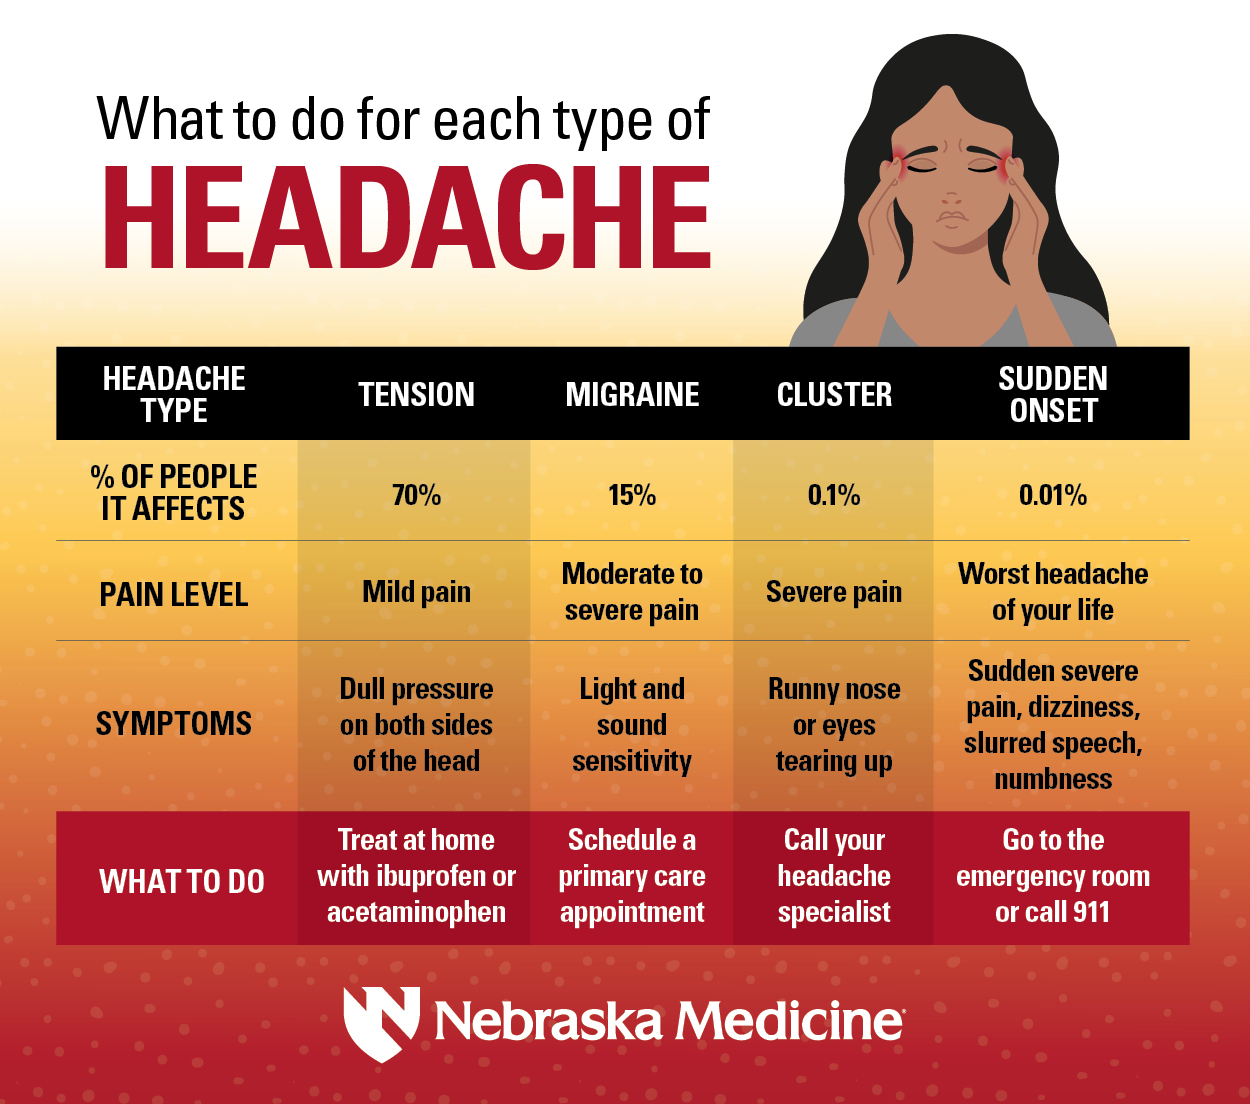 https://www.nebraskamed.com/sites/default/files/images/neurology/Headaches_Infographic_blog.jpg